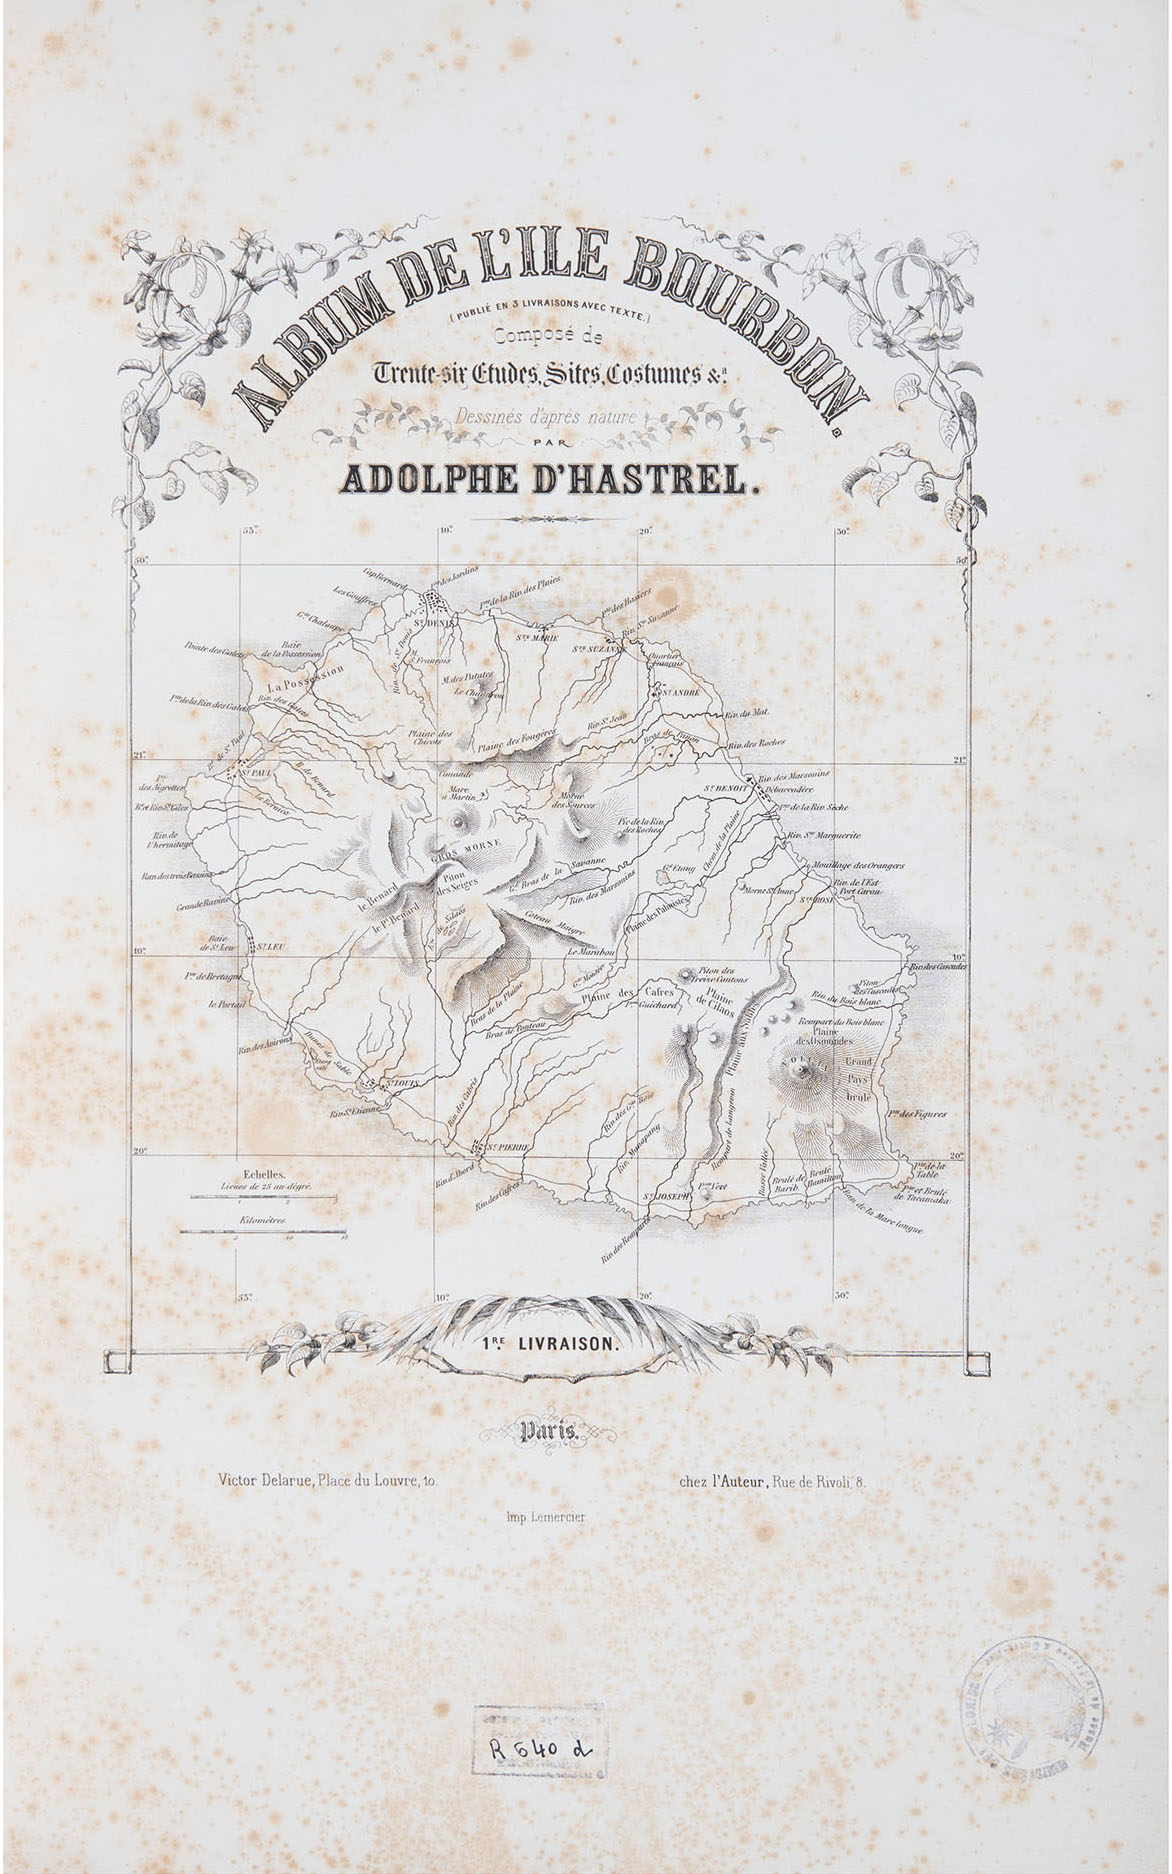 Album de l'Ile Bourbon composé de trente-six études, sites, costumes dessinés d'après nature par Adolphe d'Hastrel